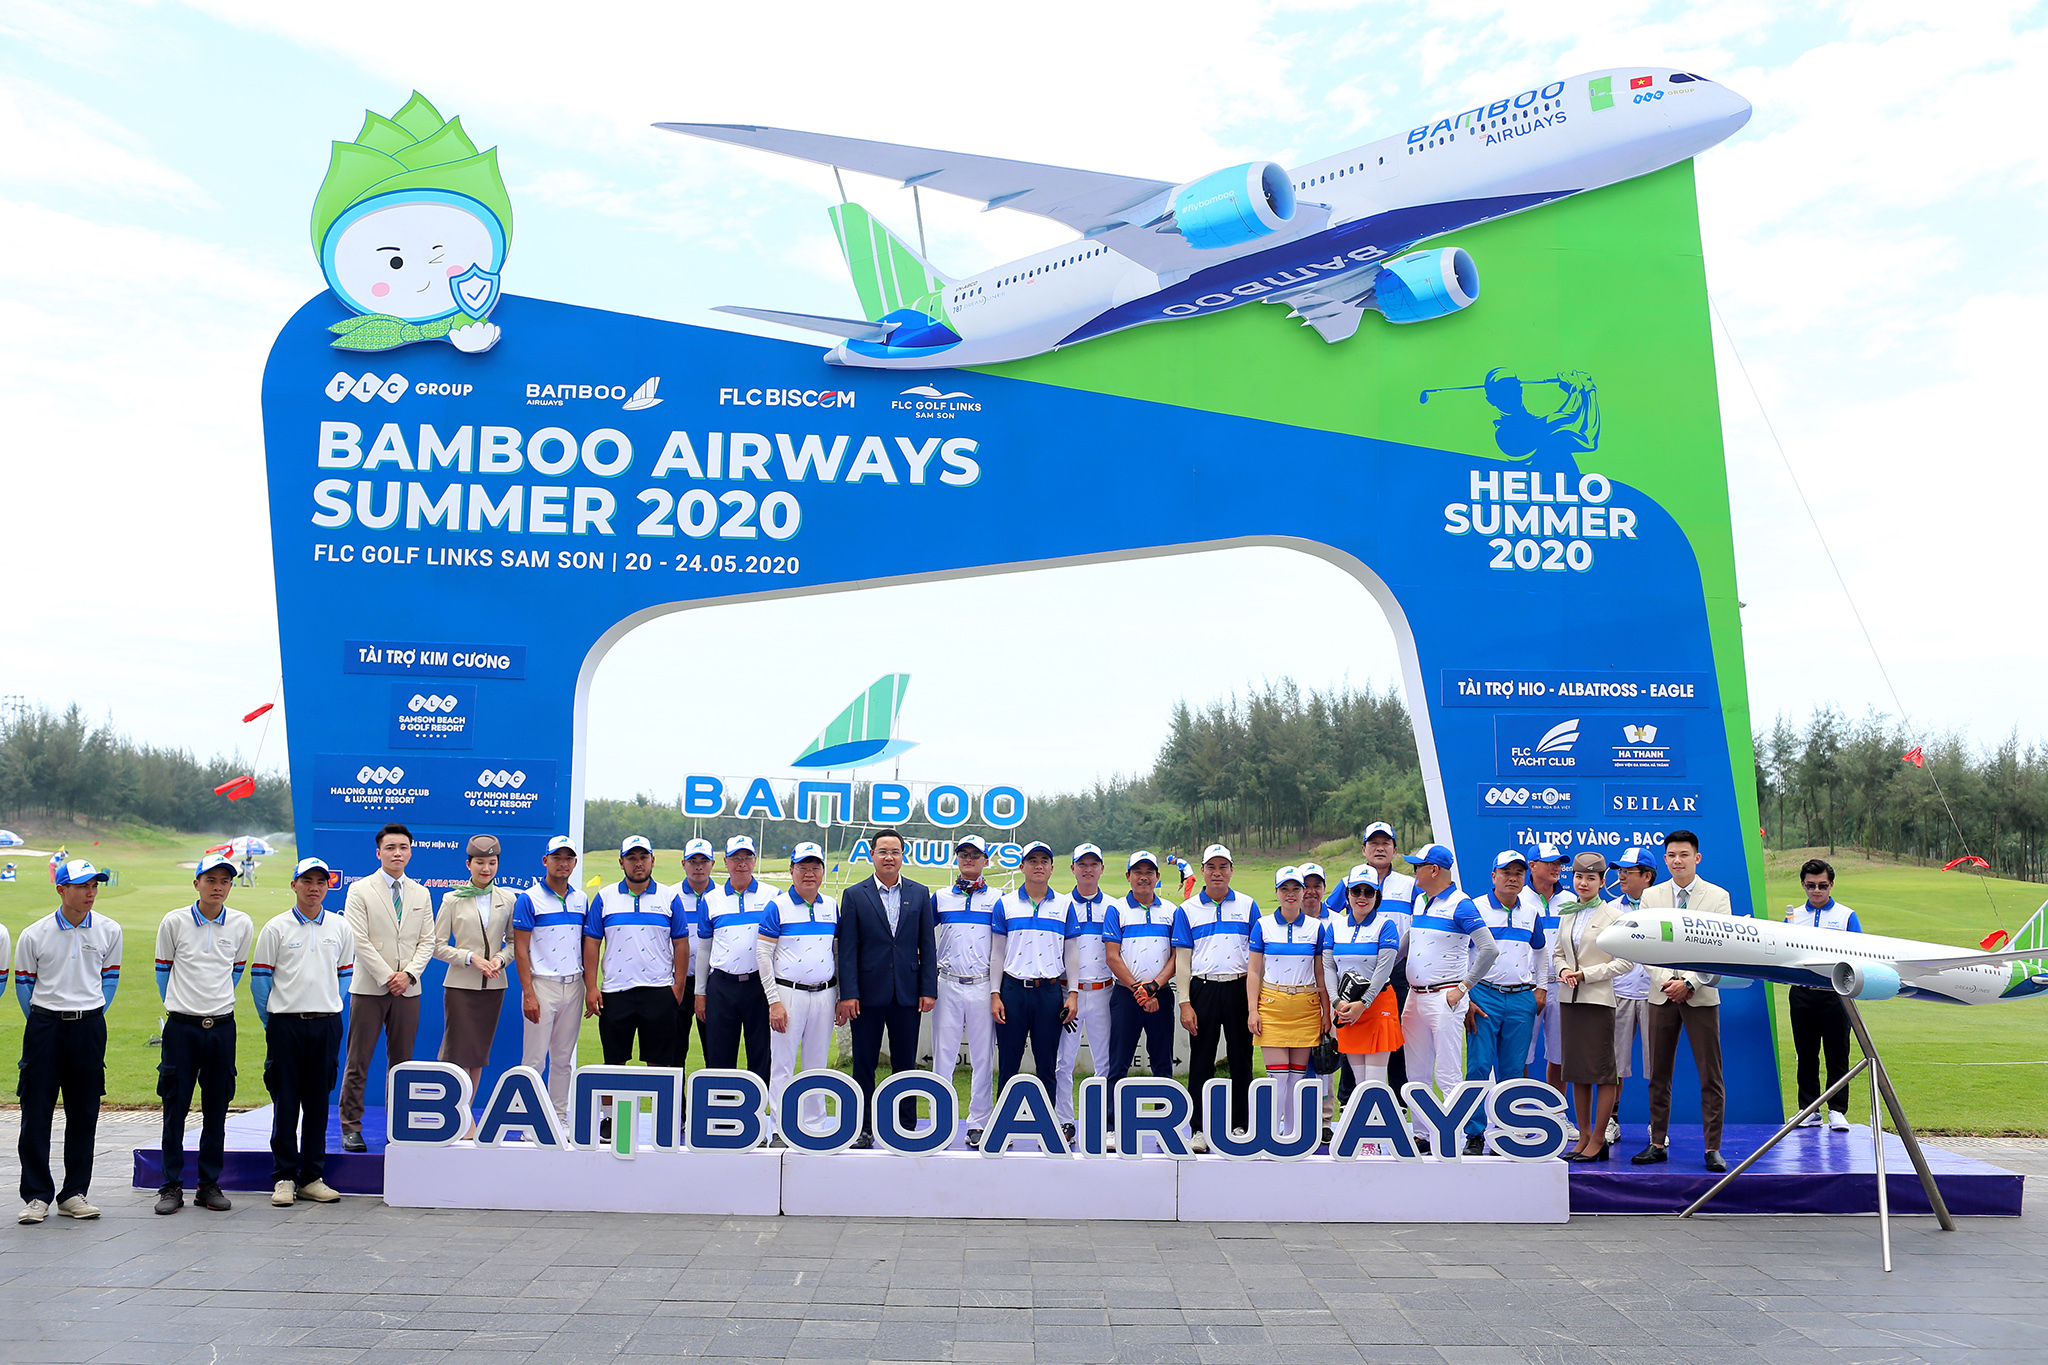 Bamboo Airways Summer 2020 chính thức khởi tranh